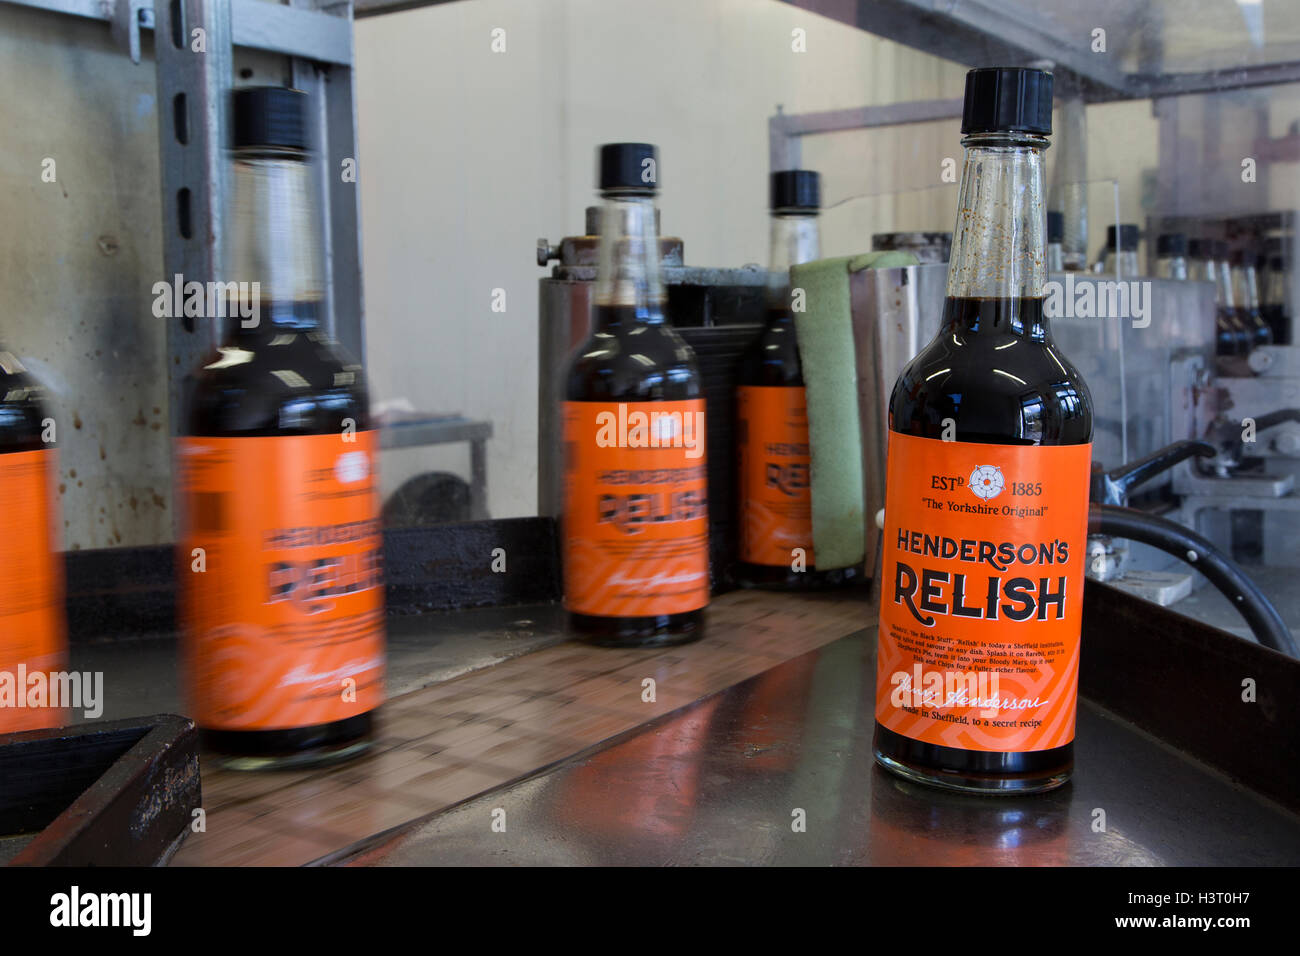 Hendersons Relish condiment similaire à la sauce Worcester plaisir a été produit en Sheffield, Yorkshire du Sud depuis 1885 Banque D'Images